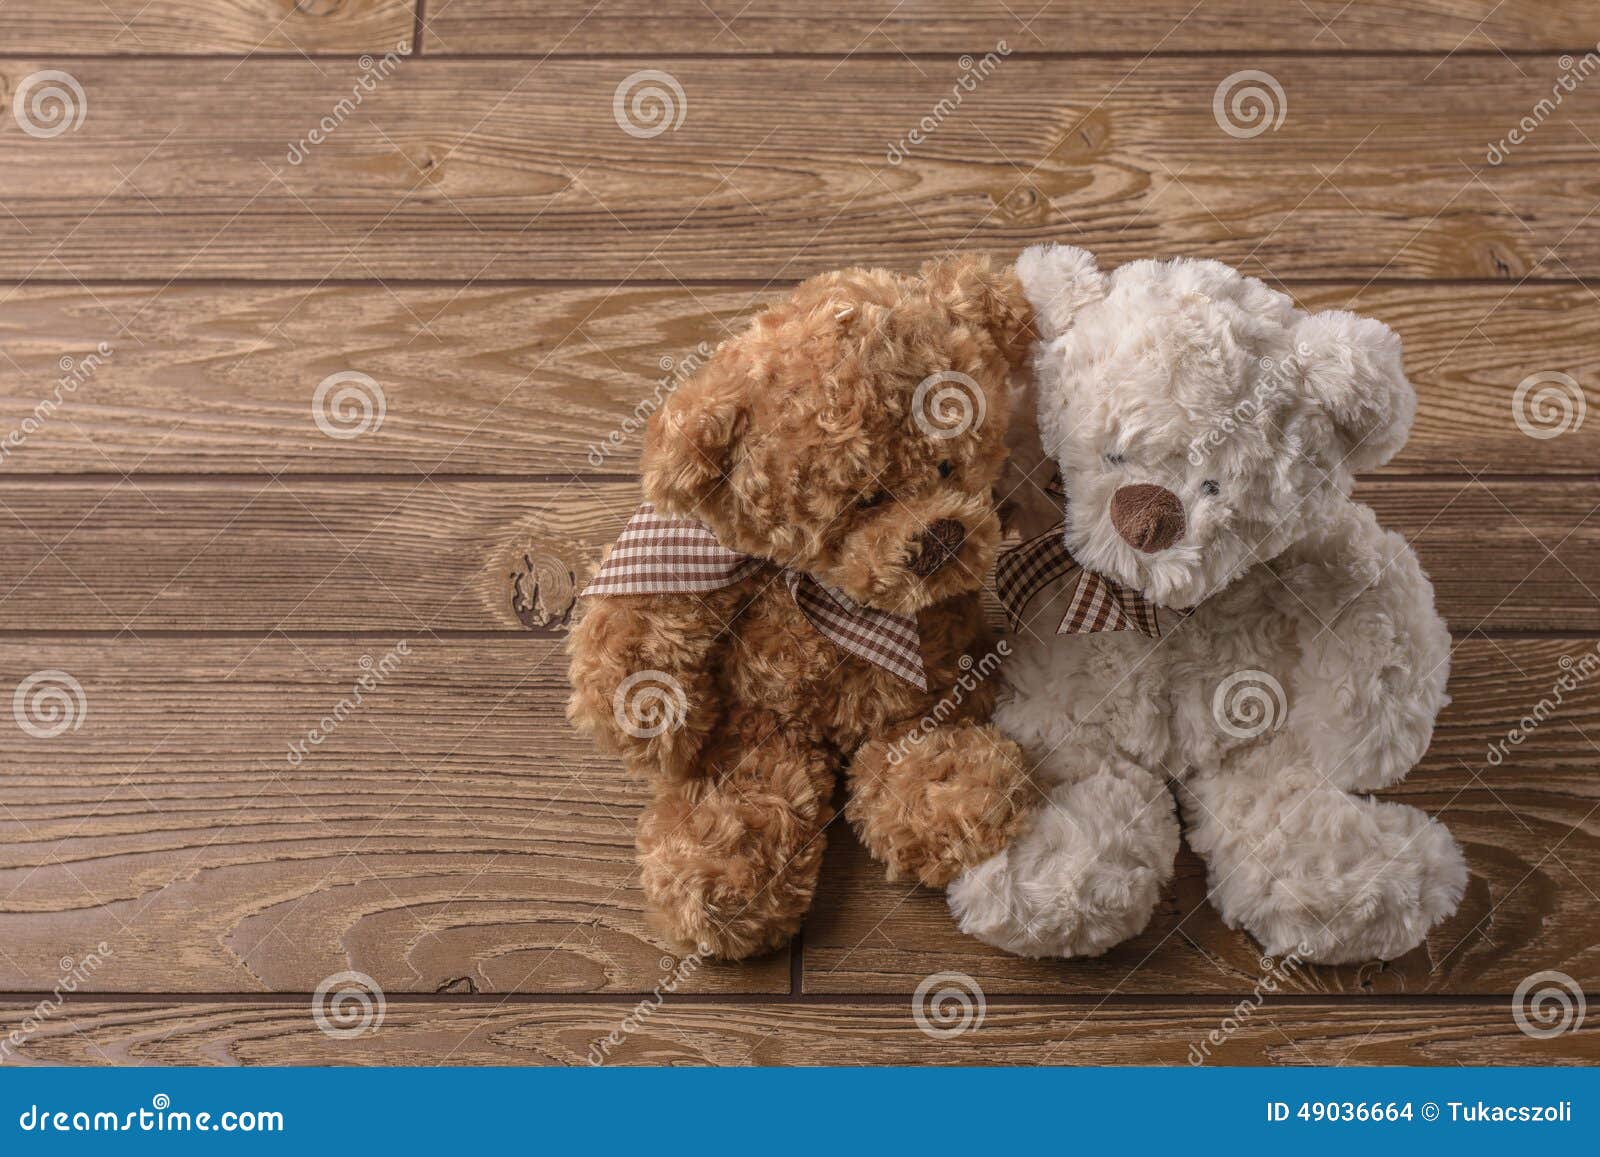 plush teddy bears couple